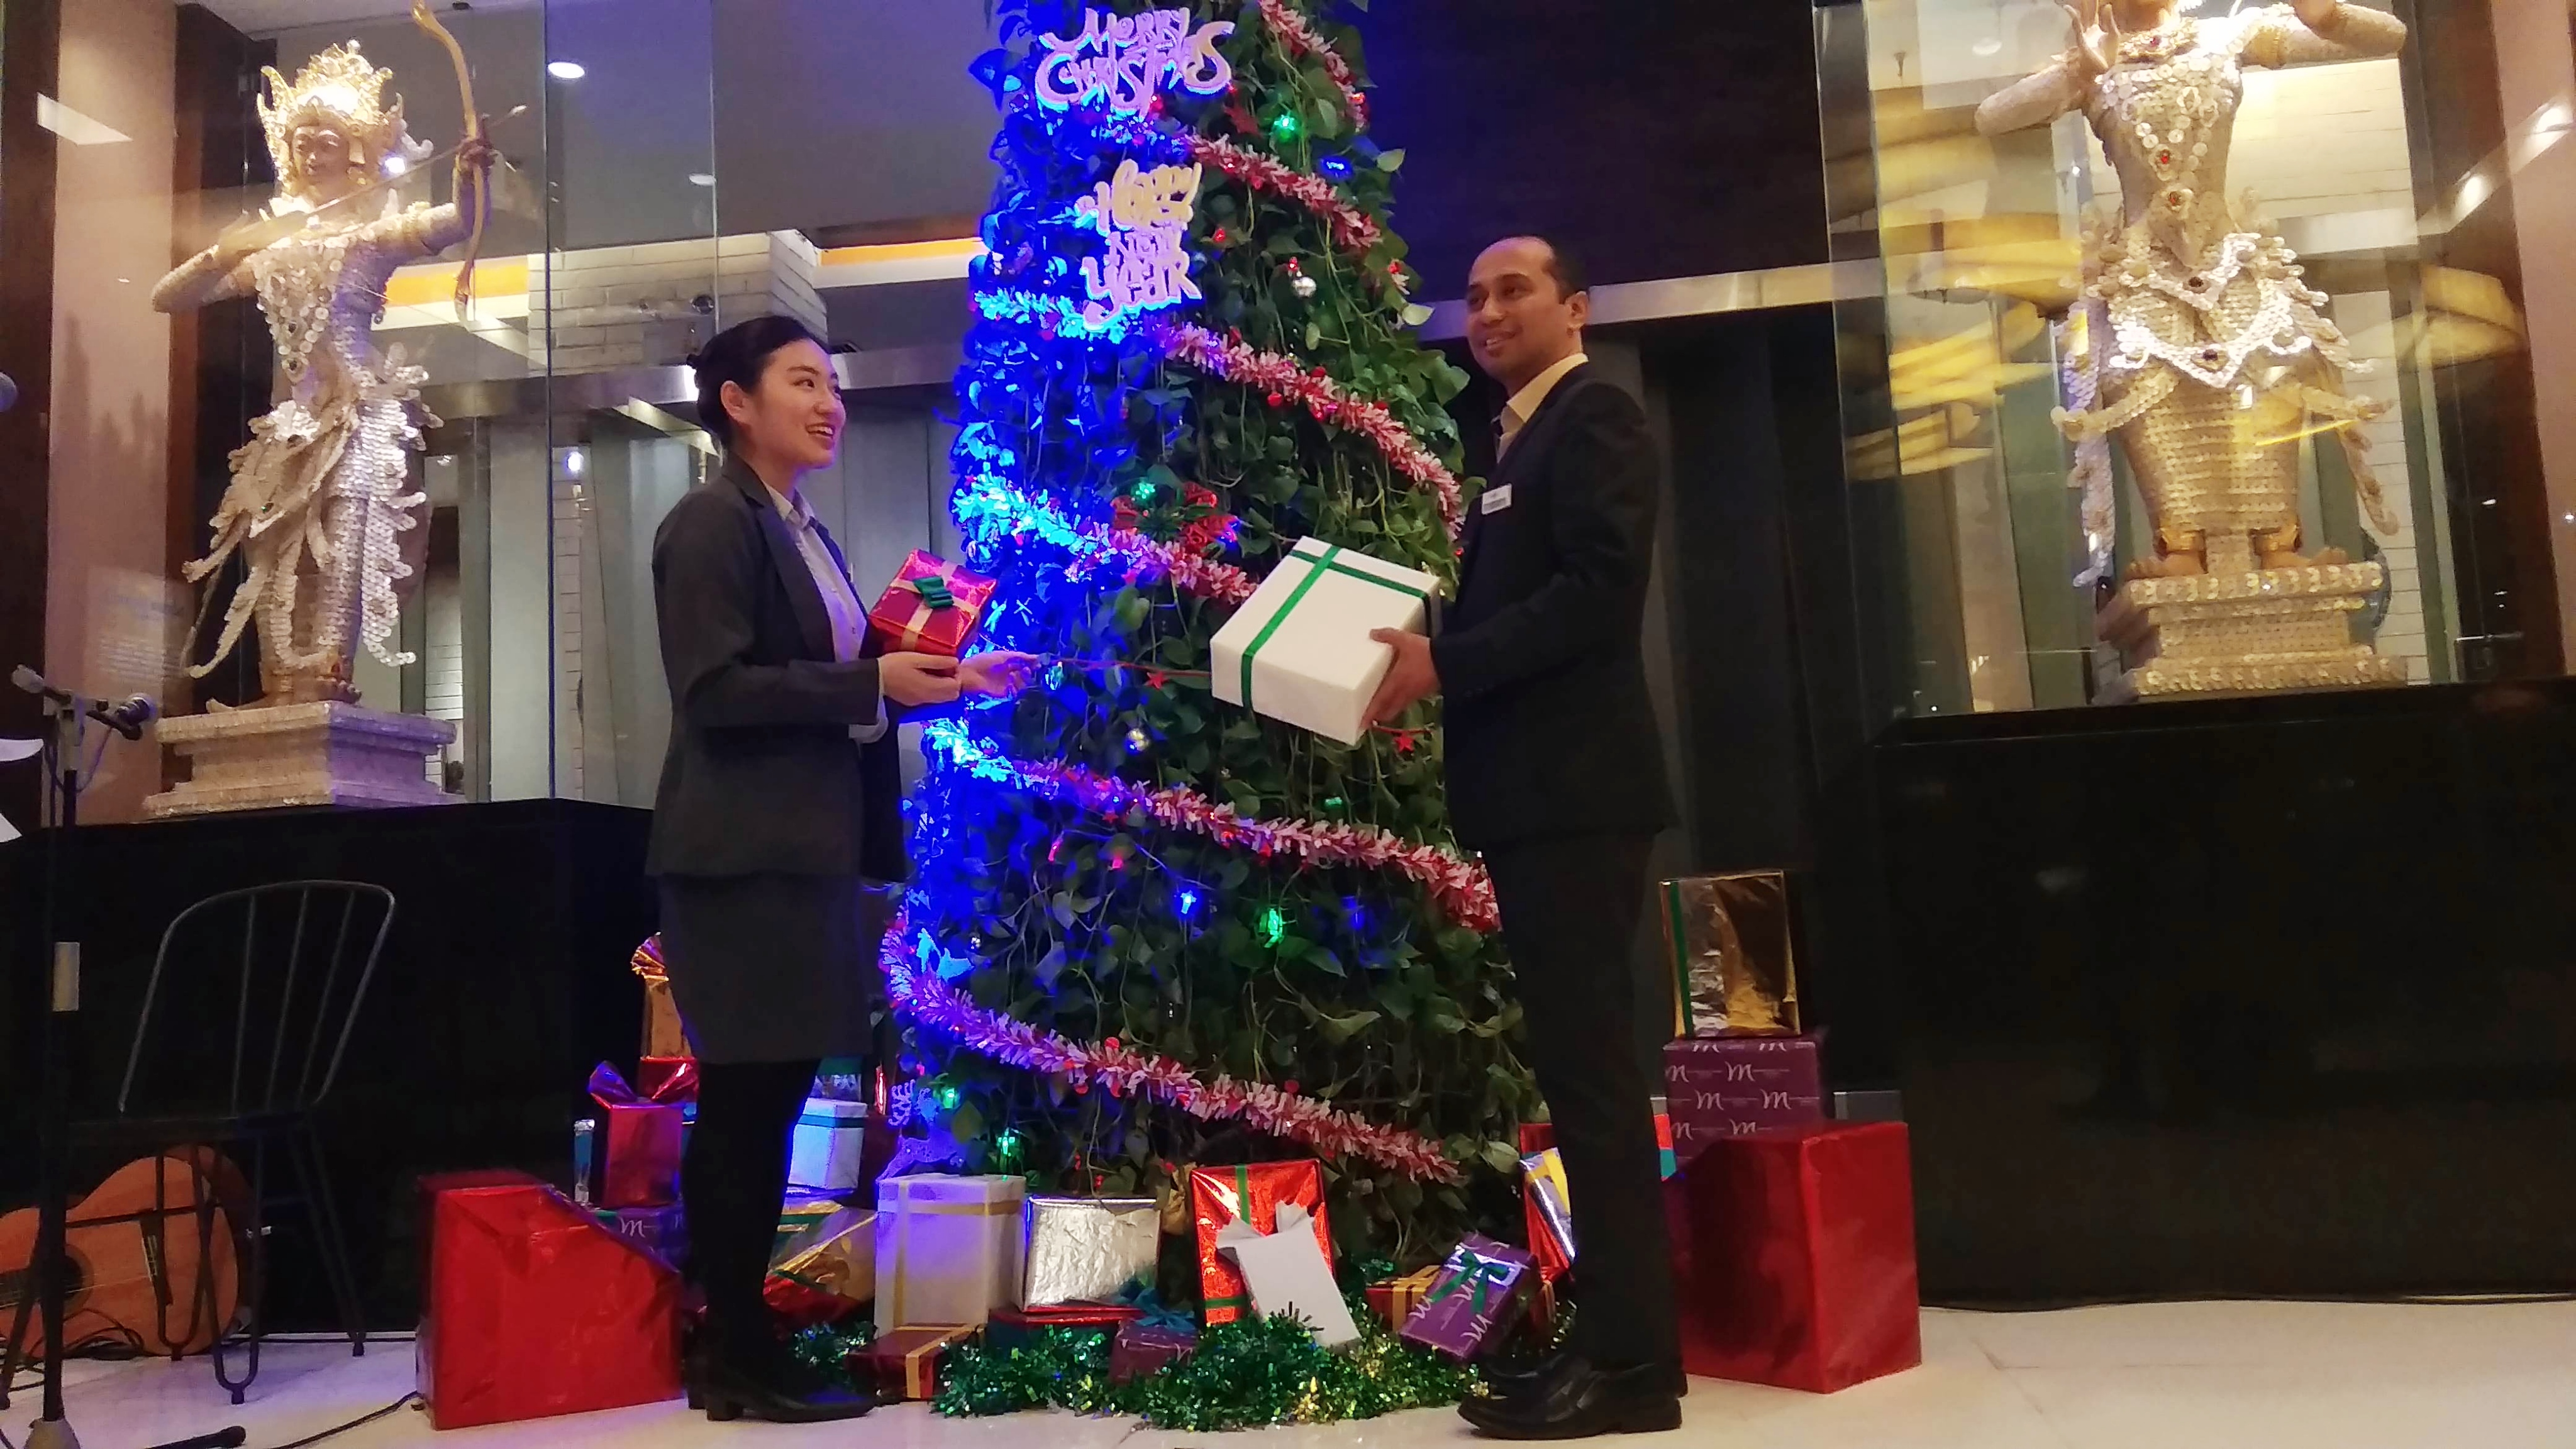 Sambut Natal Dan Tahun Baru, Hotel Mercure Surabaya Pajang Pohon Natal Hidroponik